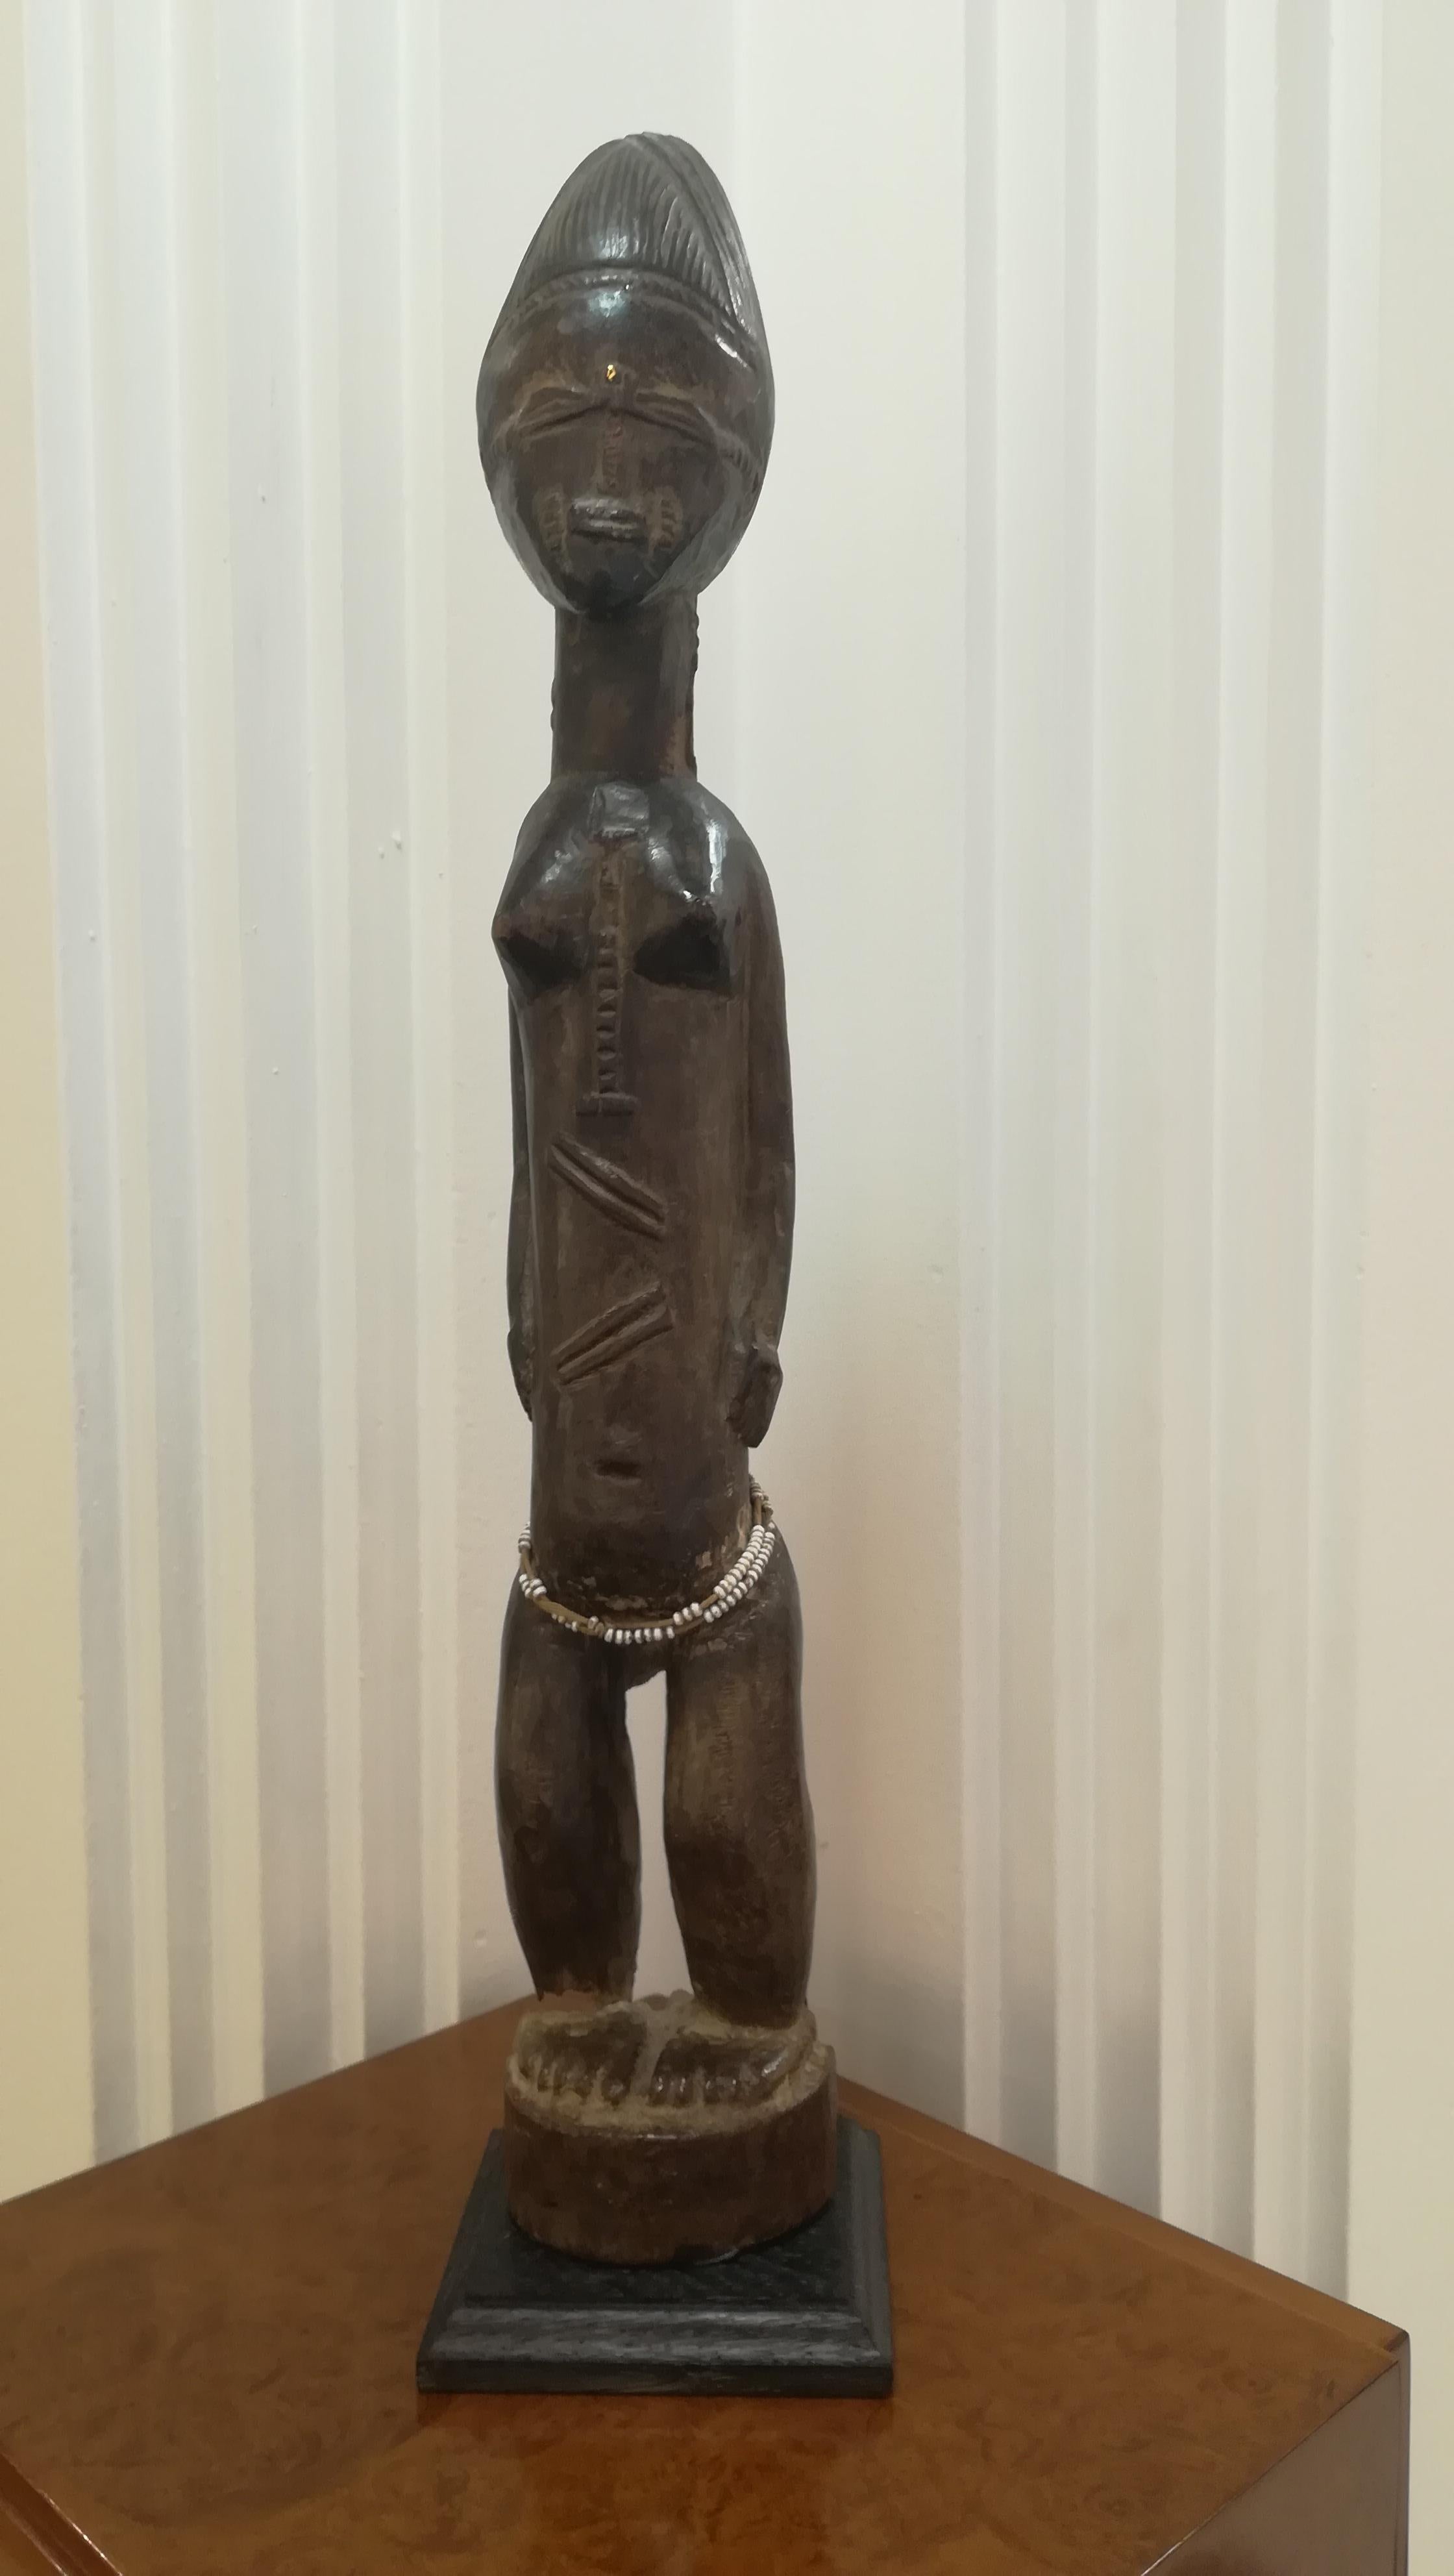 Ivory Coast Baoule figure
Provenance: Alain de Monbrison collection.